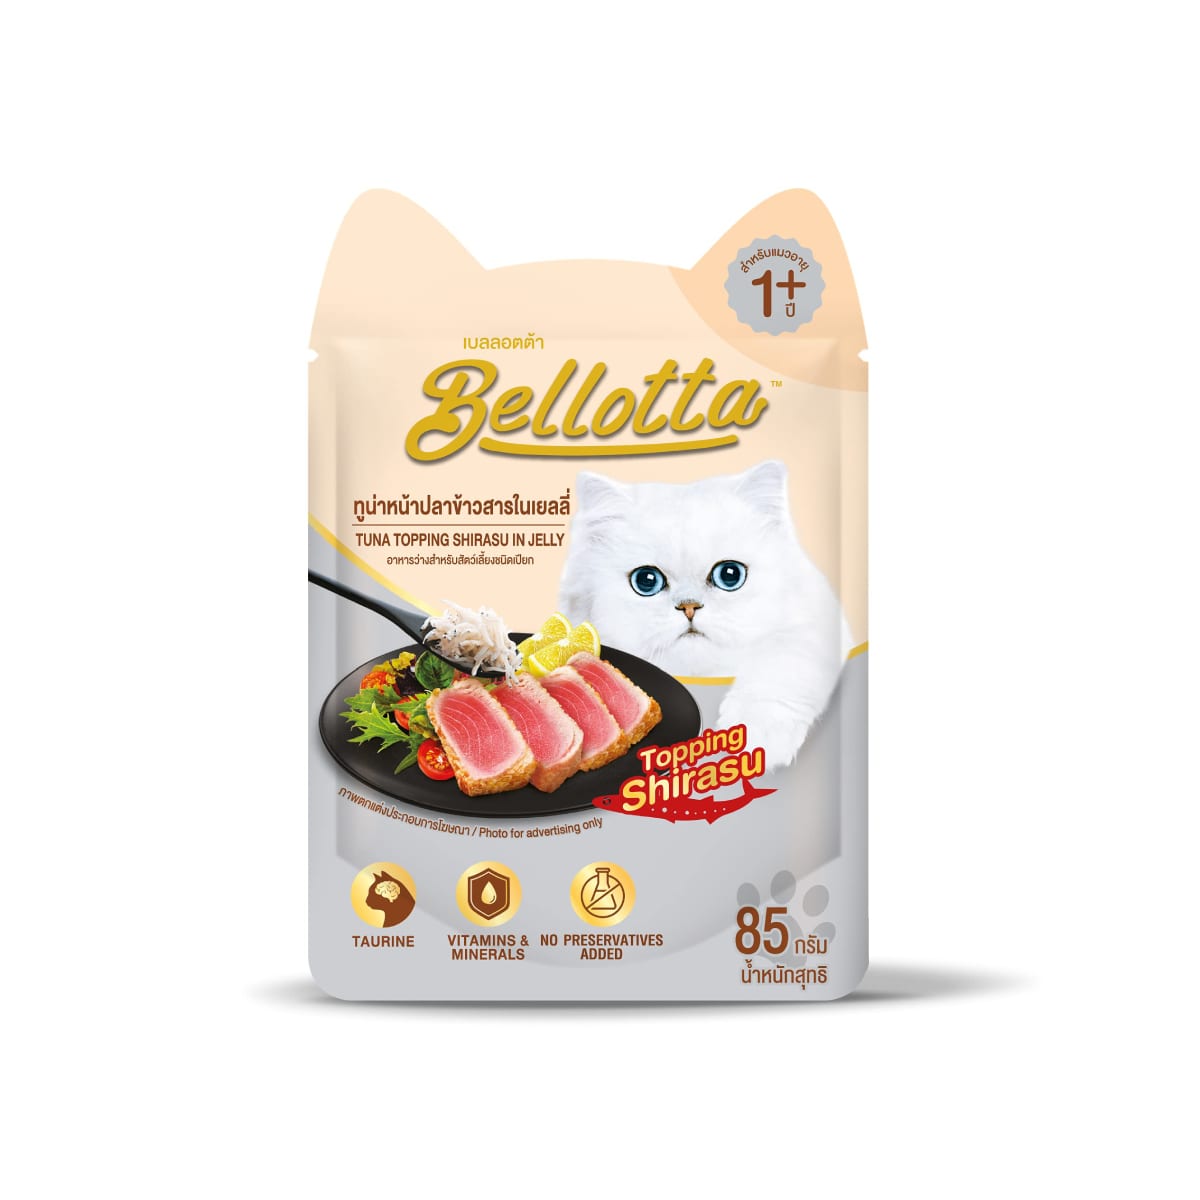 Bellotta เบลลอตต้า อาหารเปียก แบบเพ้าช์ สำหรับแมวโตทุกสายพันธุ์ สูตรทูน่าหน้าปลาข้าวสารในเยลลี่ 85 g_1